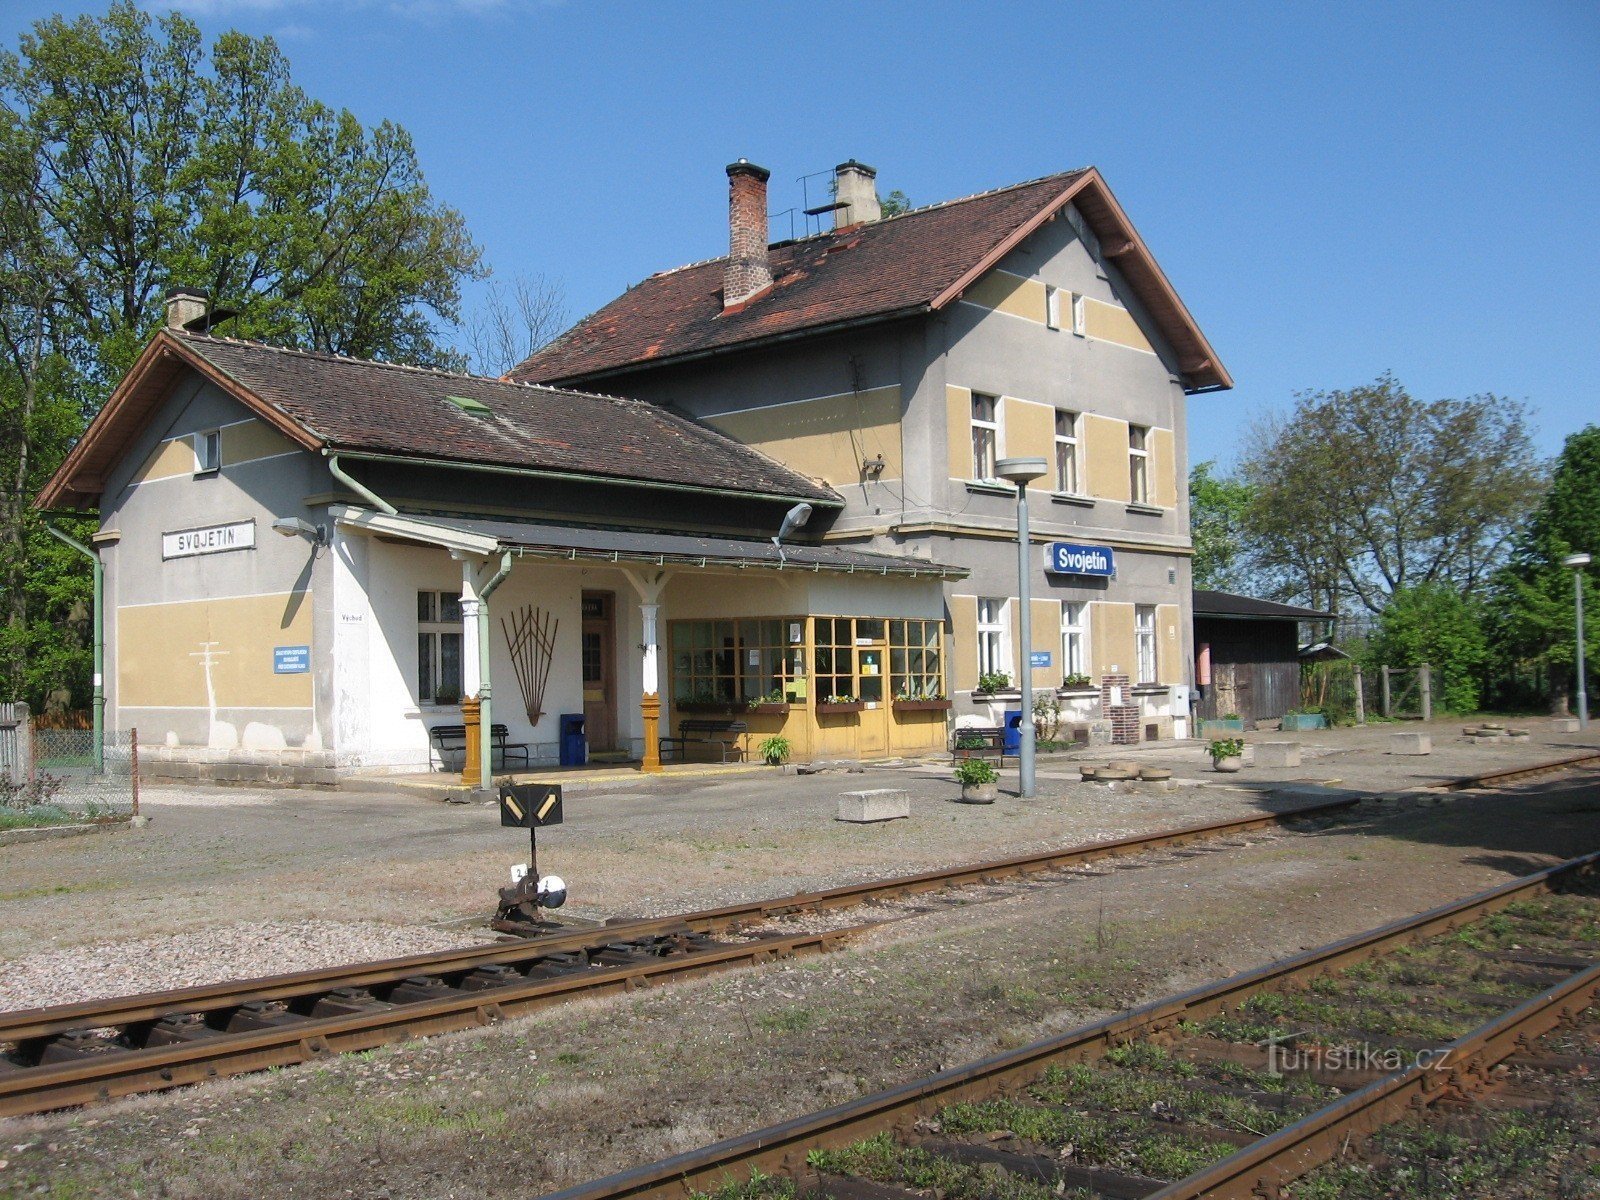 Svojetín Station